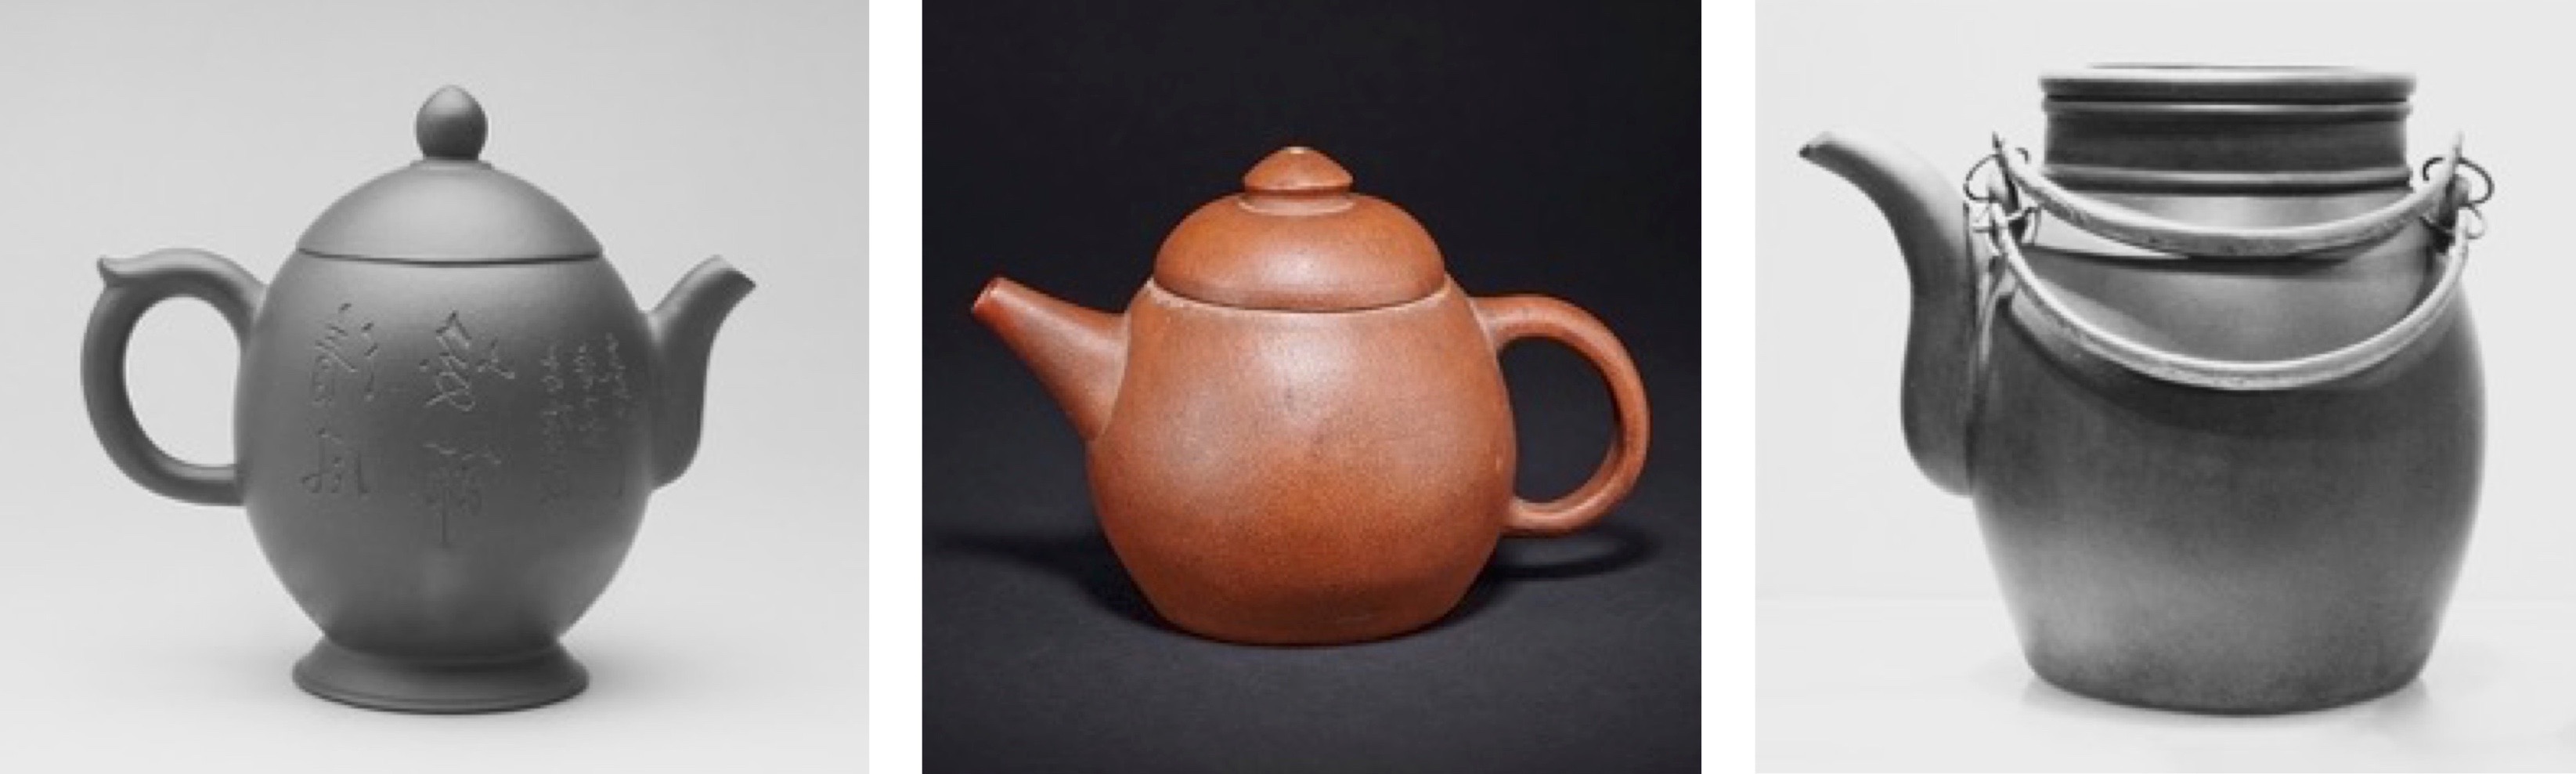 чайник цзы ша Лун Дай династия Цин